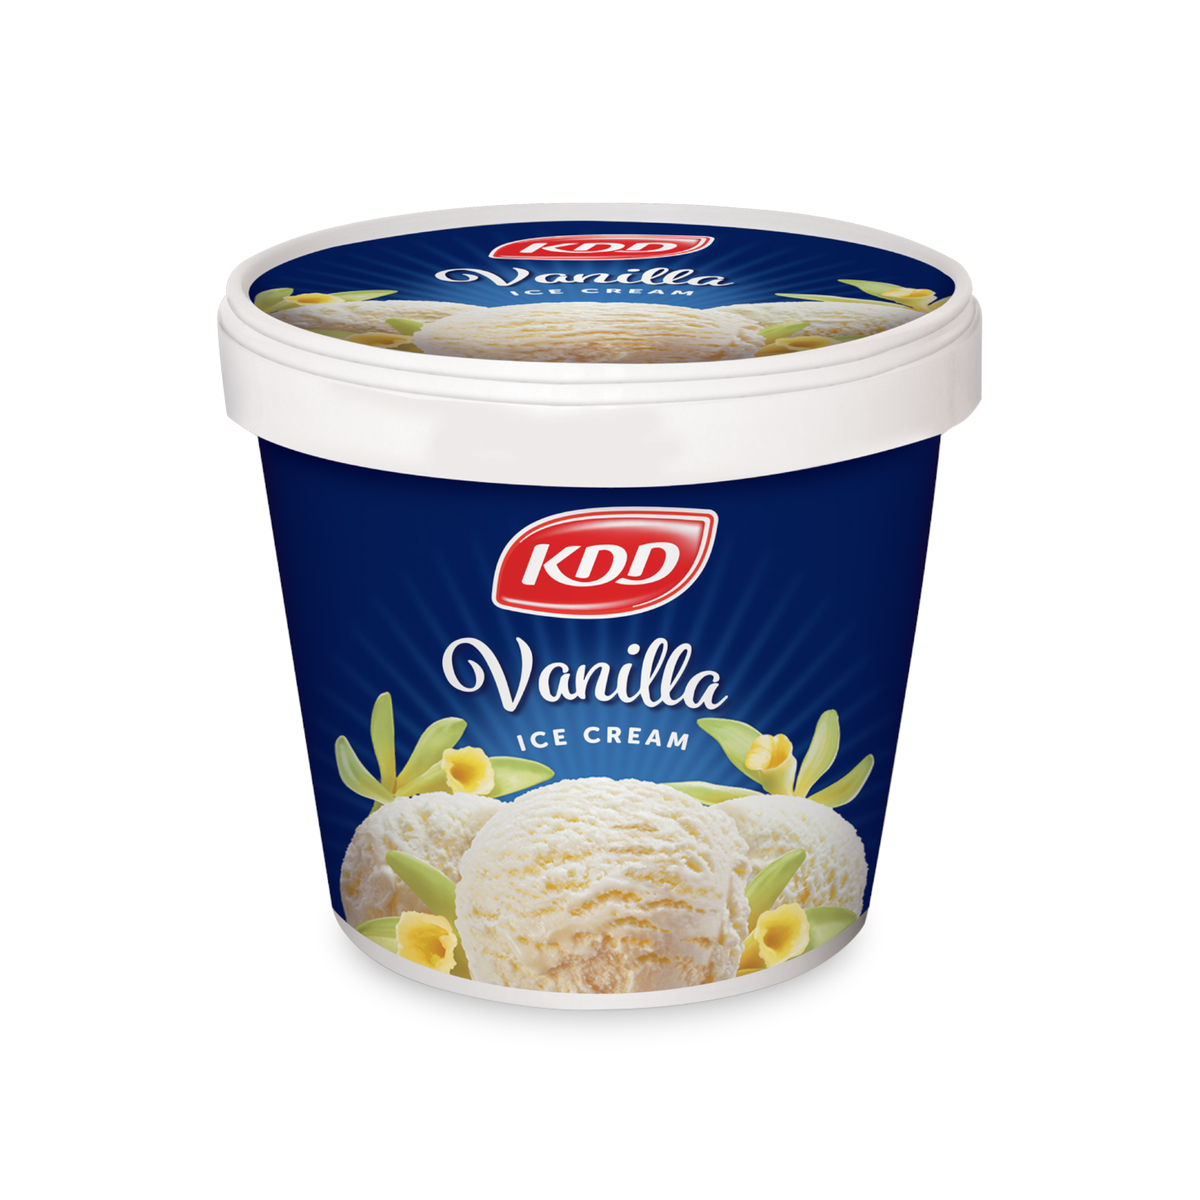 KDD Vanilla Ice Cream 500ml